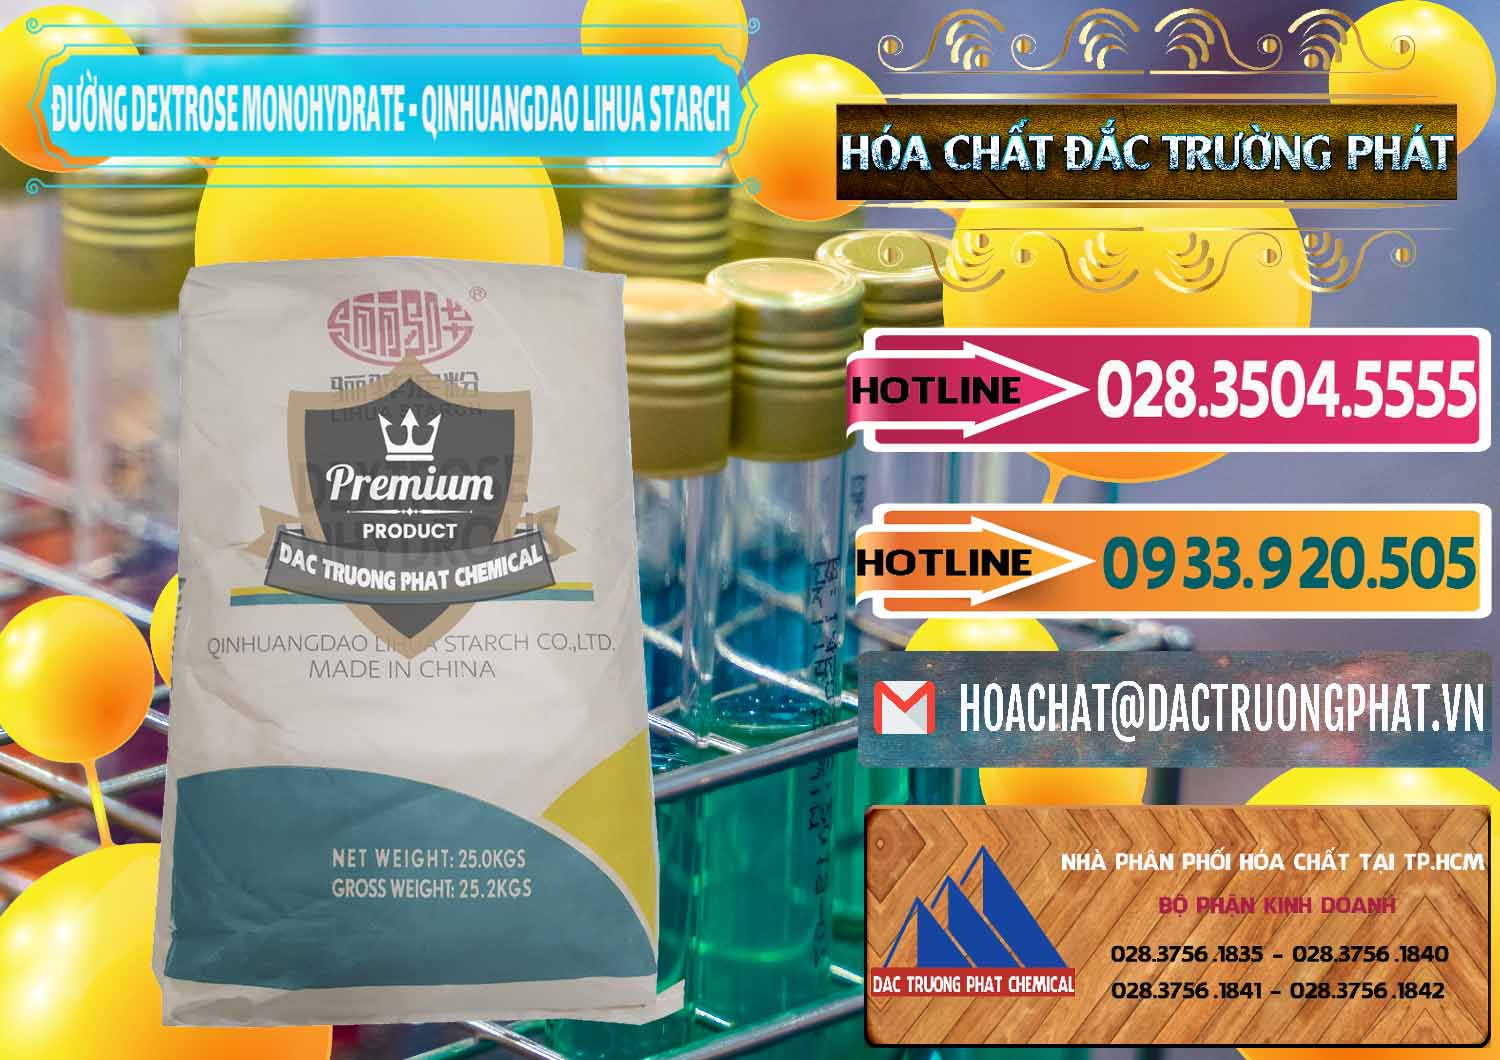 Công ty phân phối và bán Đường Dextrose Monohydrate Food Grade Qinhuangdao Lihua Starch - 0224 - Chuyên phân phối & nhập khẩu hóa chất tại TP.HCM - dactruongphat.vn